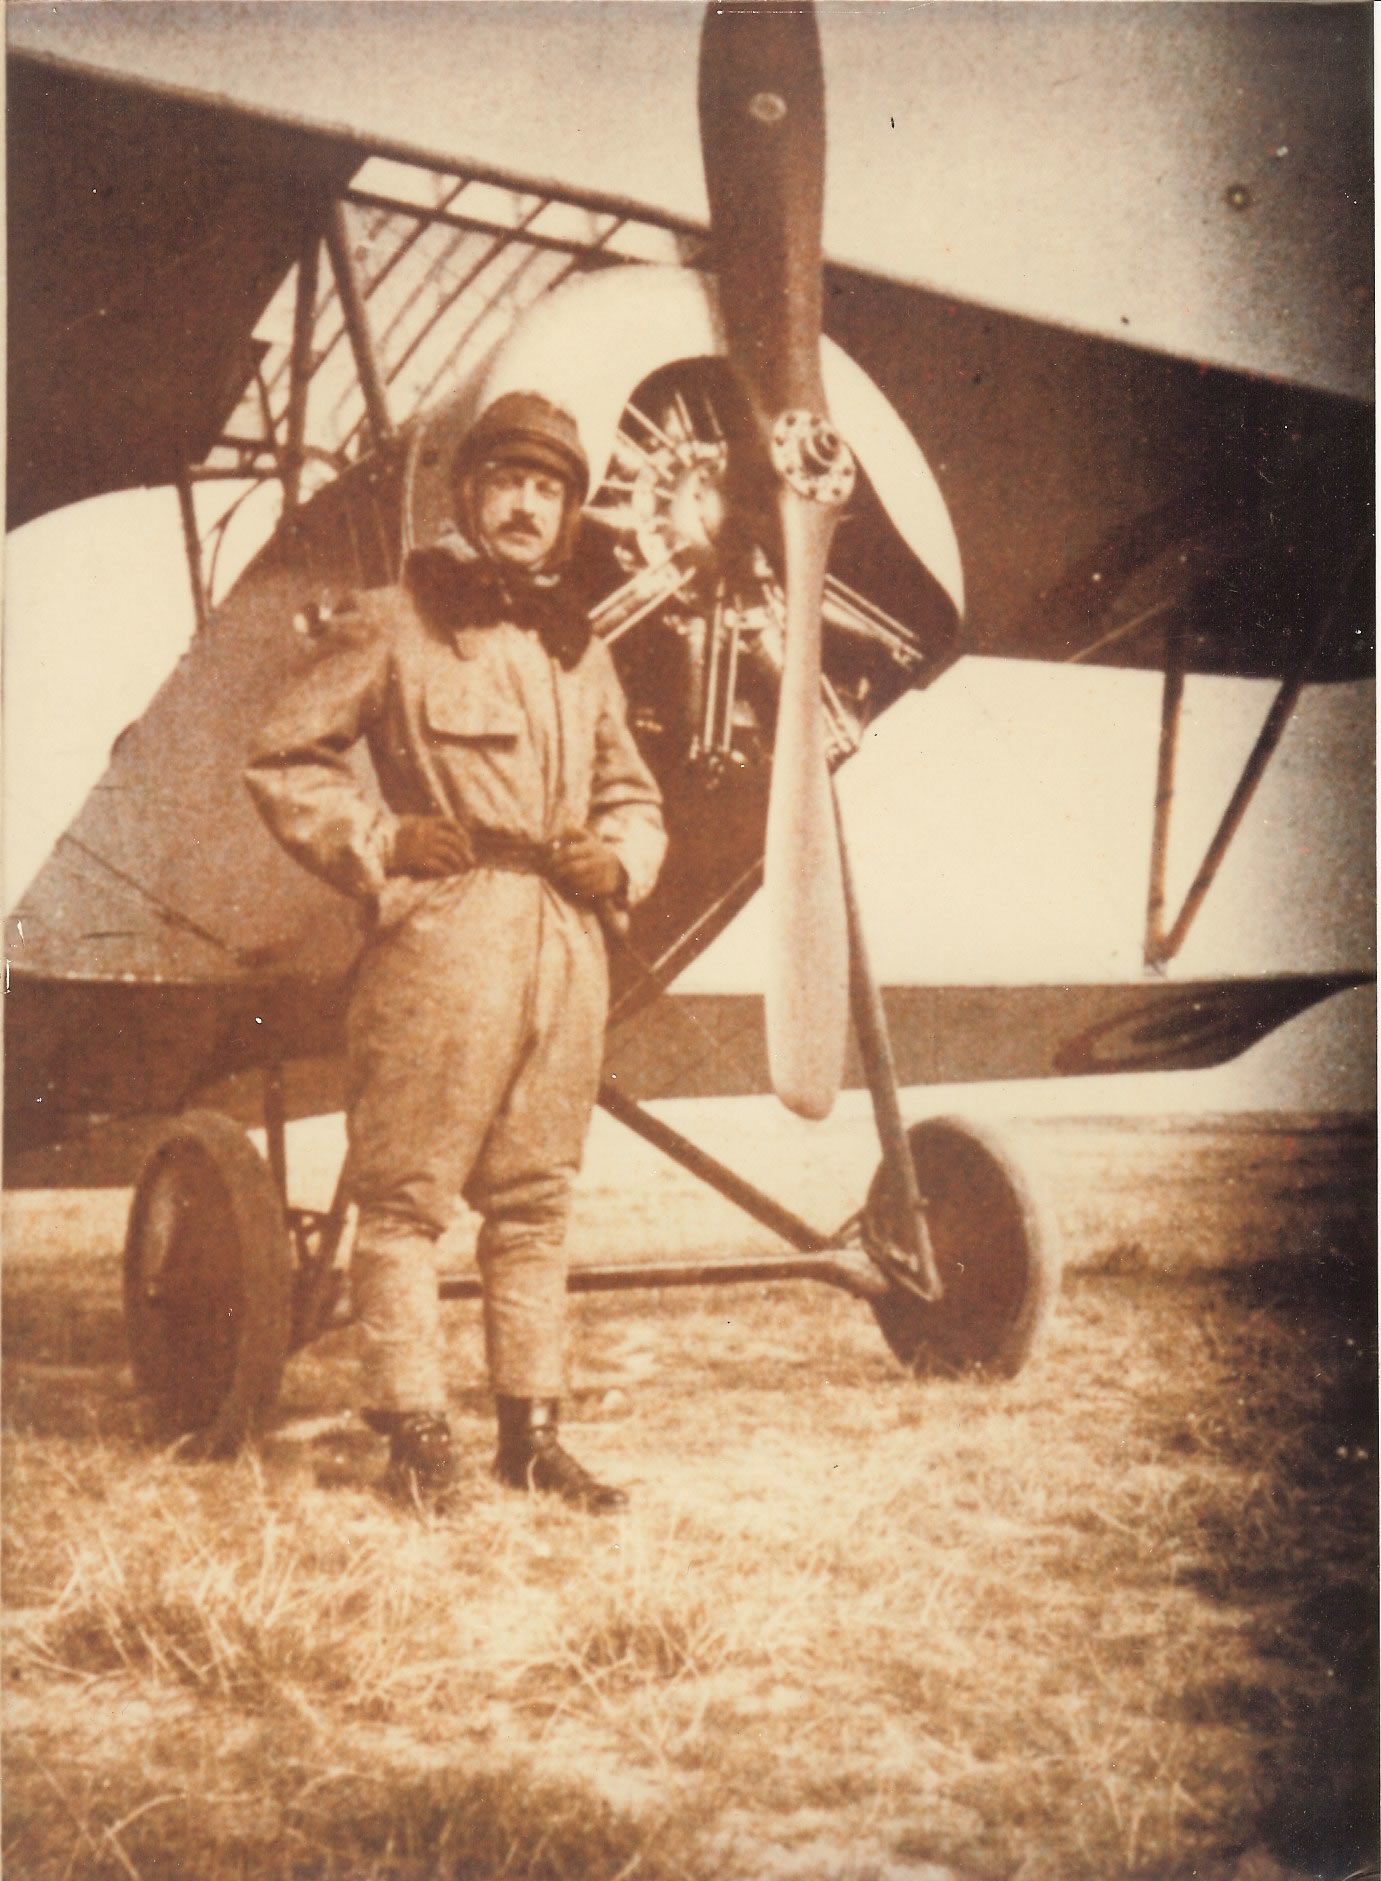 Jacques de Silvestre devant un Nieuport XII Il fut pilote et commandant de l'escadrille N 68 du 23 septembre 1915 au 6 juin 1916